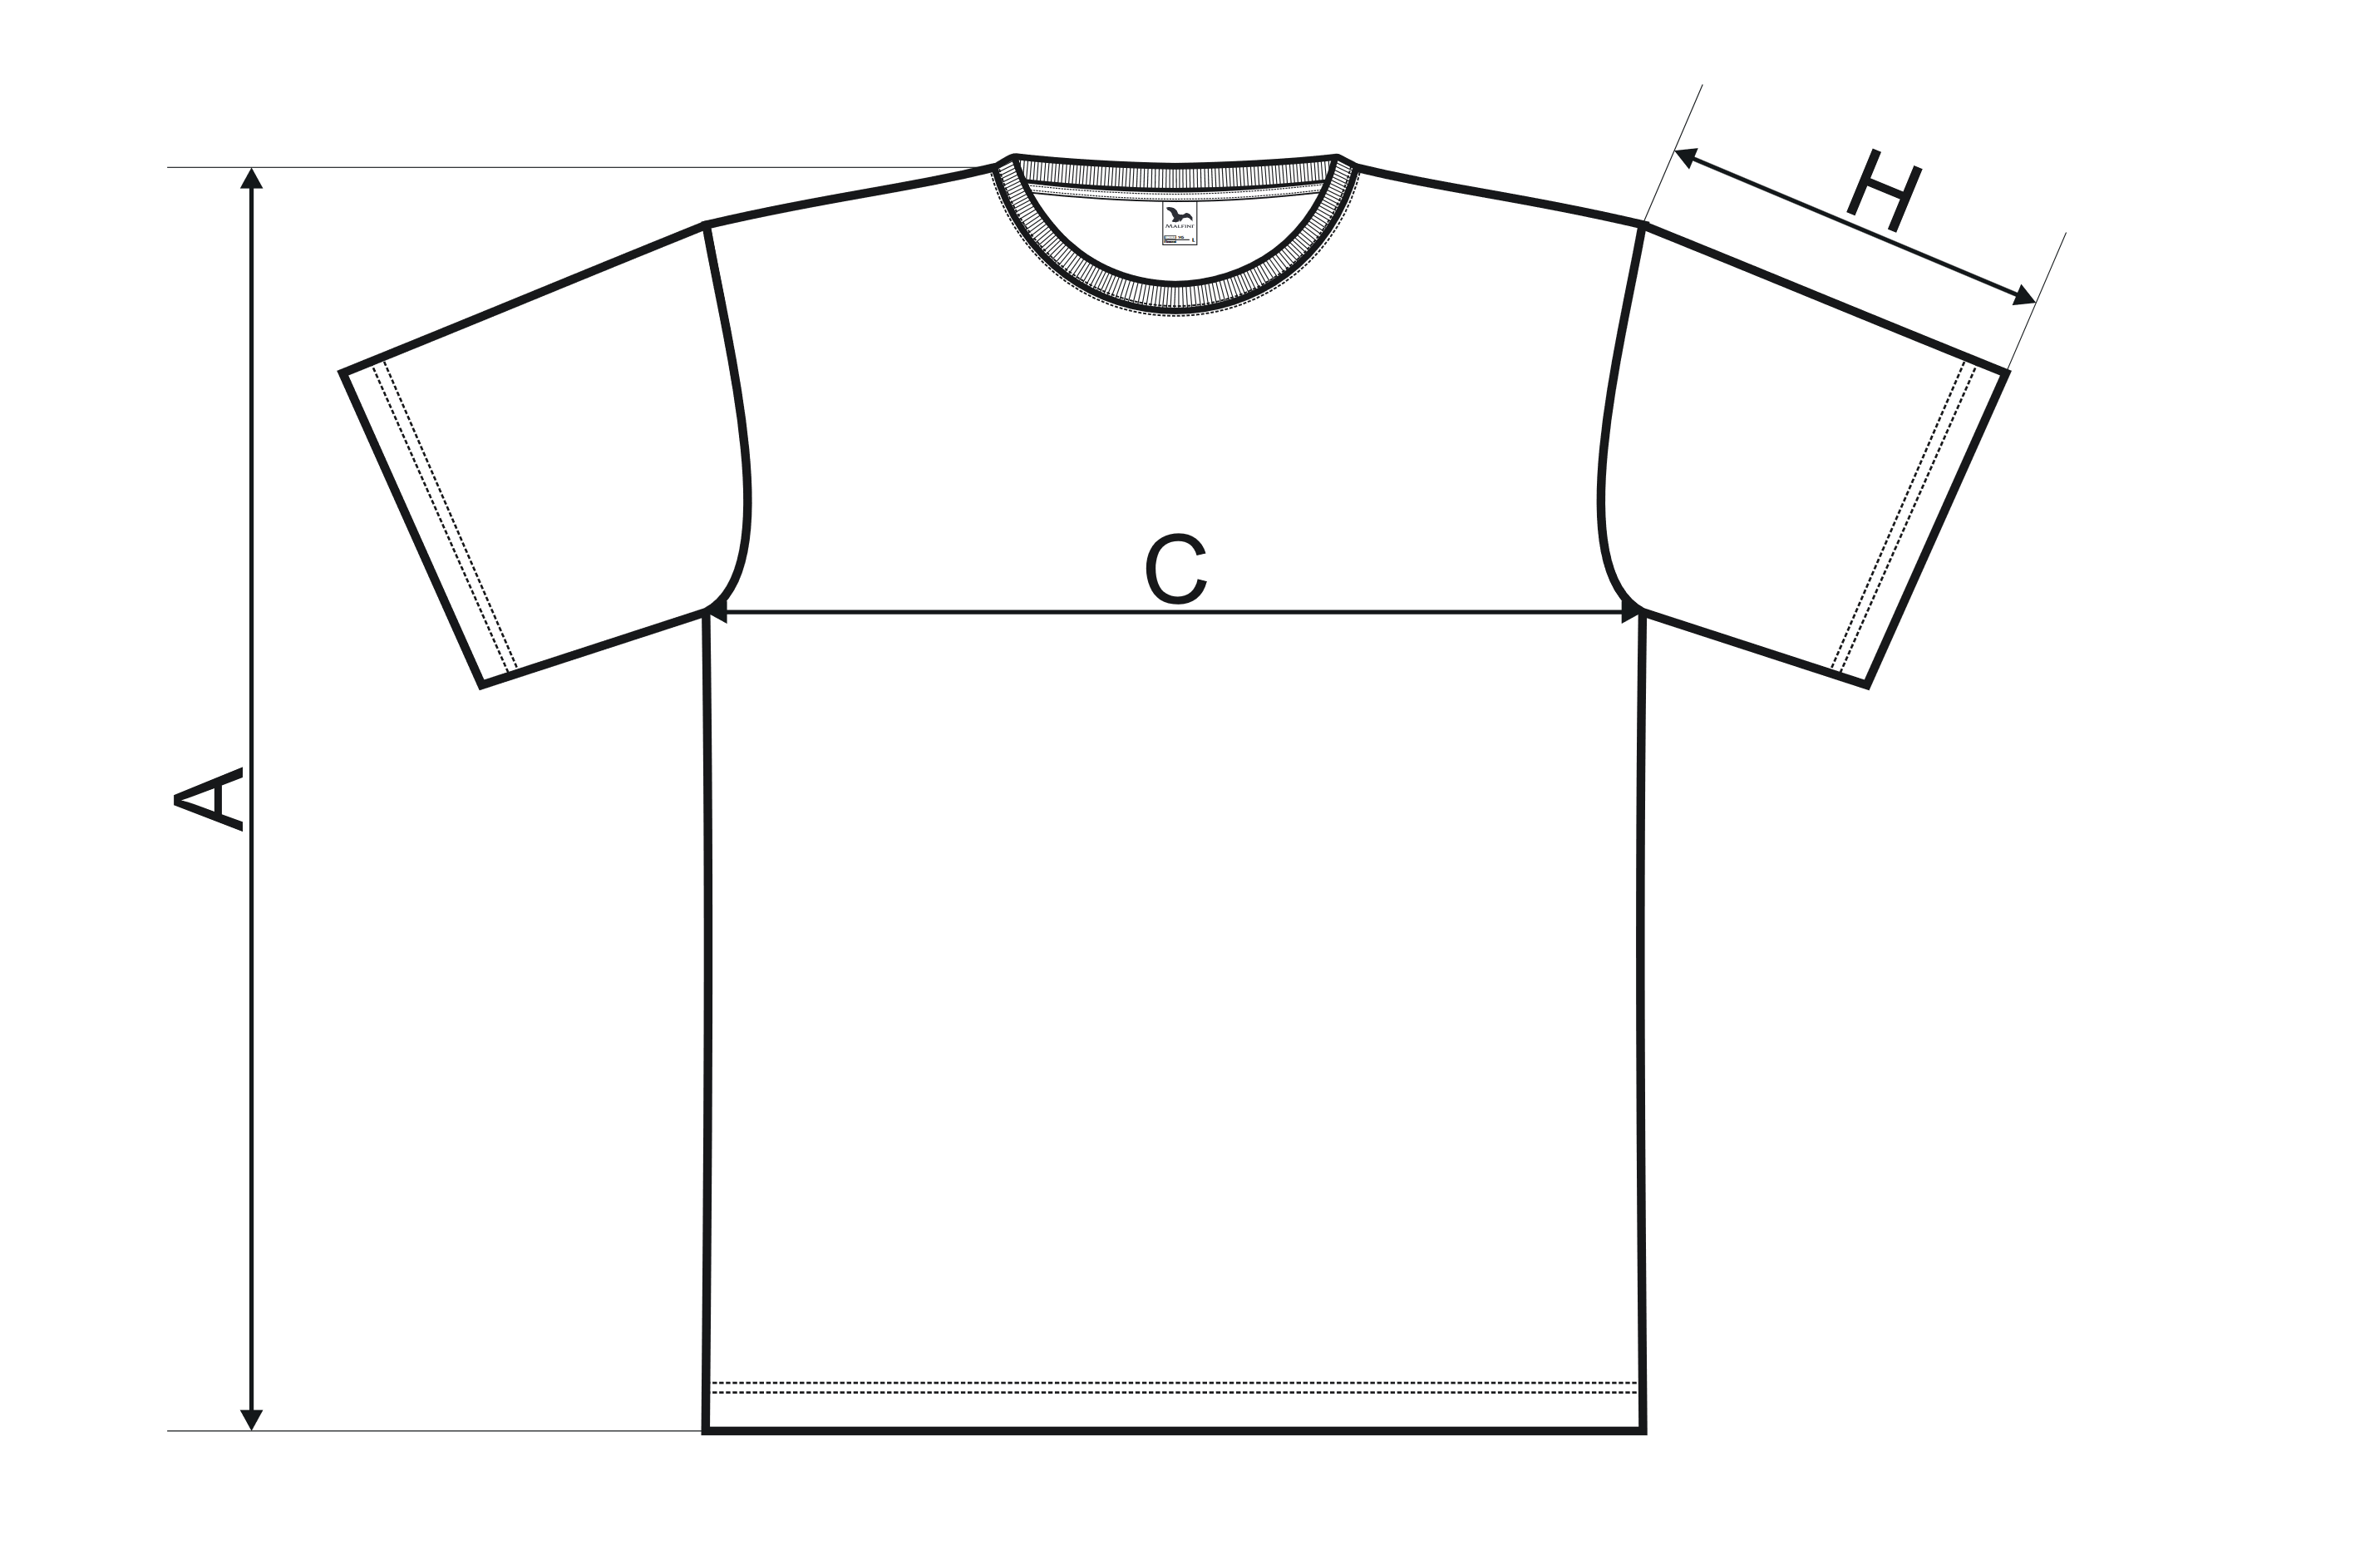 Tričko s krátkým rukávem - Tabulka rozměrů